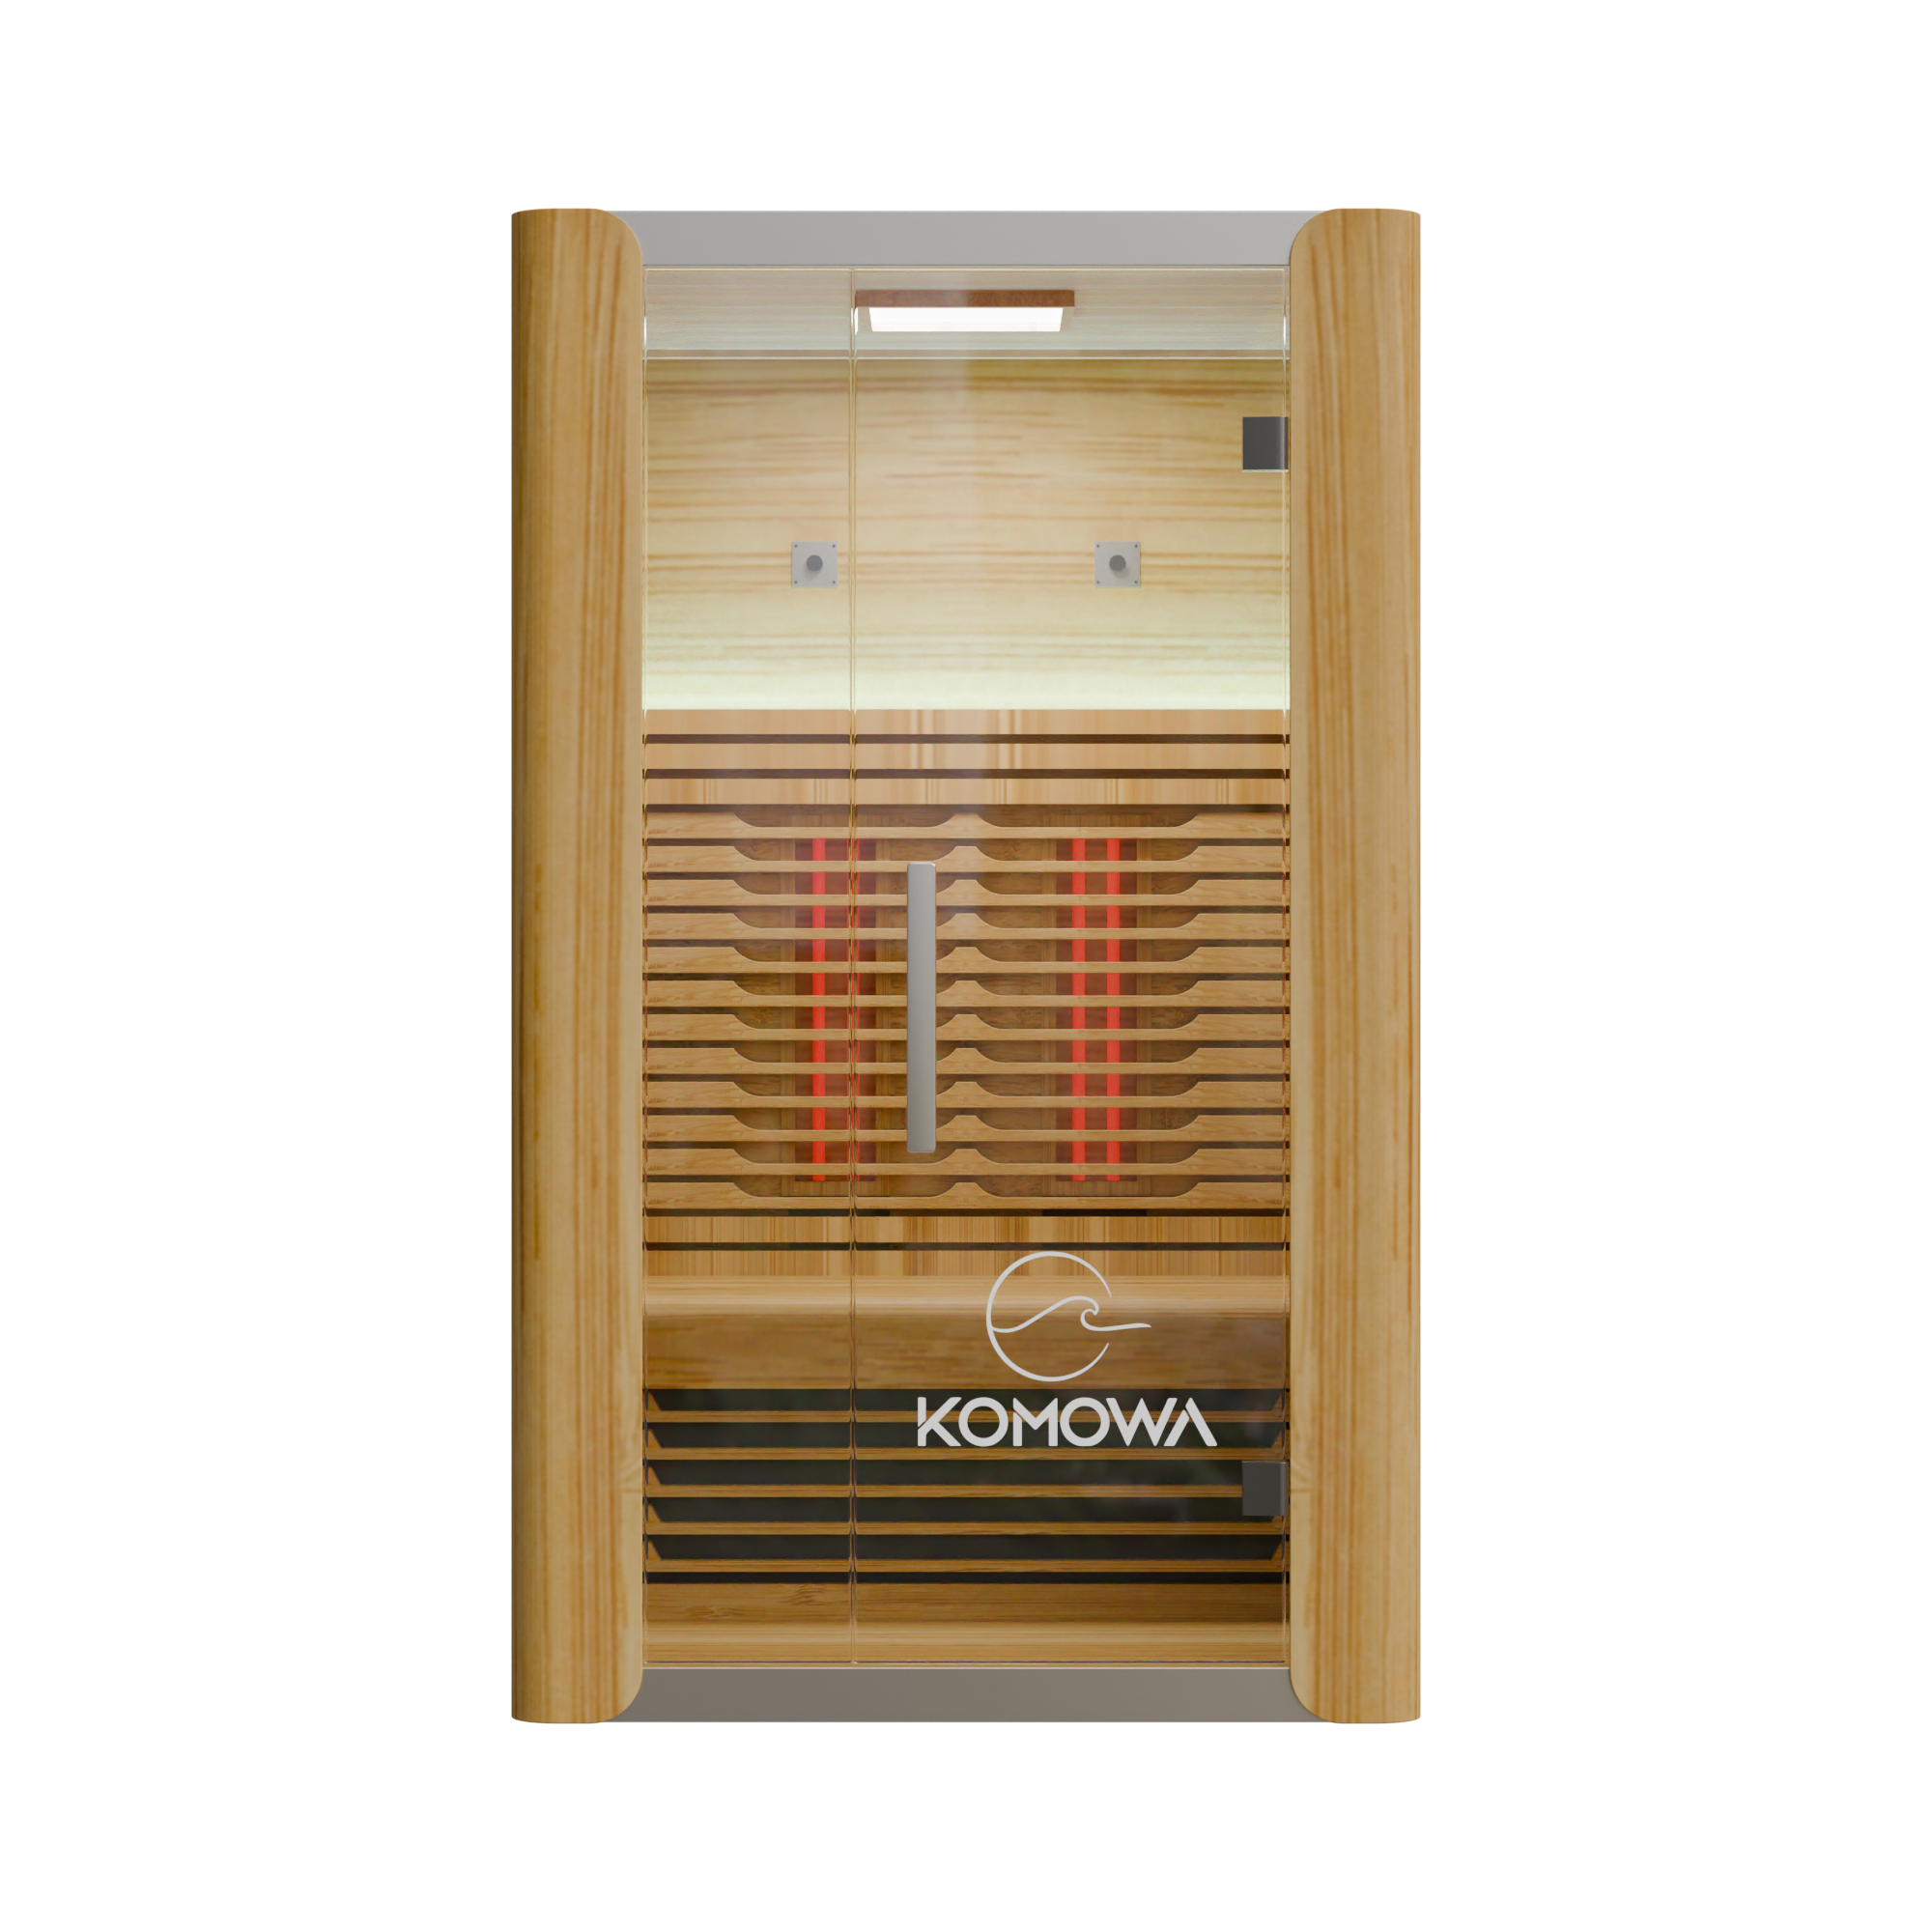 Komowa Como 2 Person Infrared Sauna